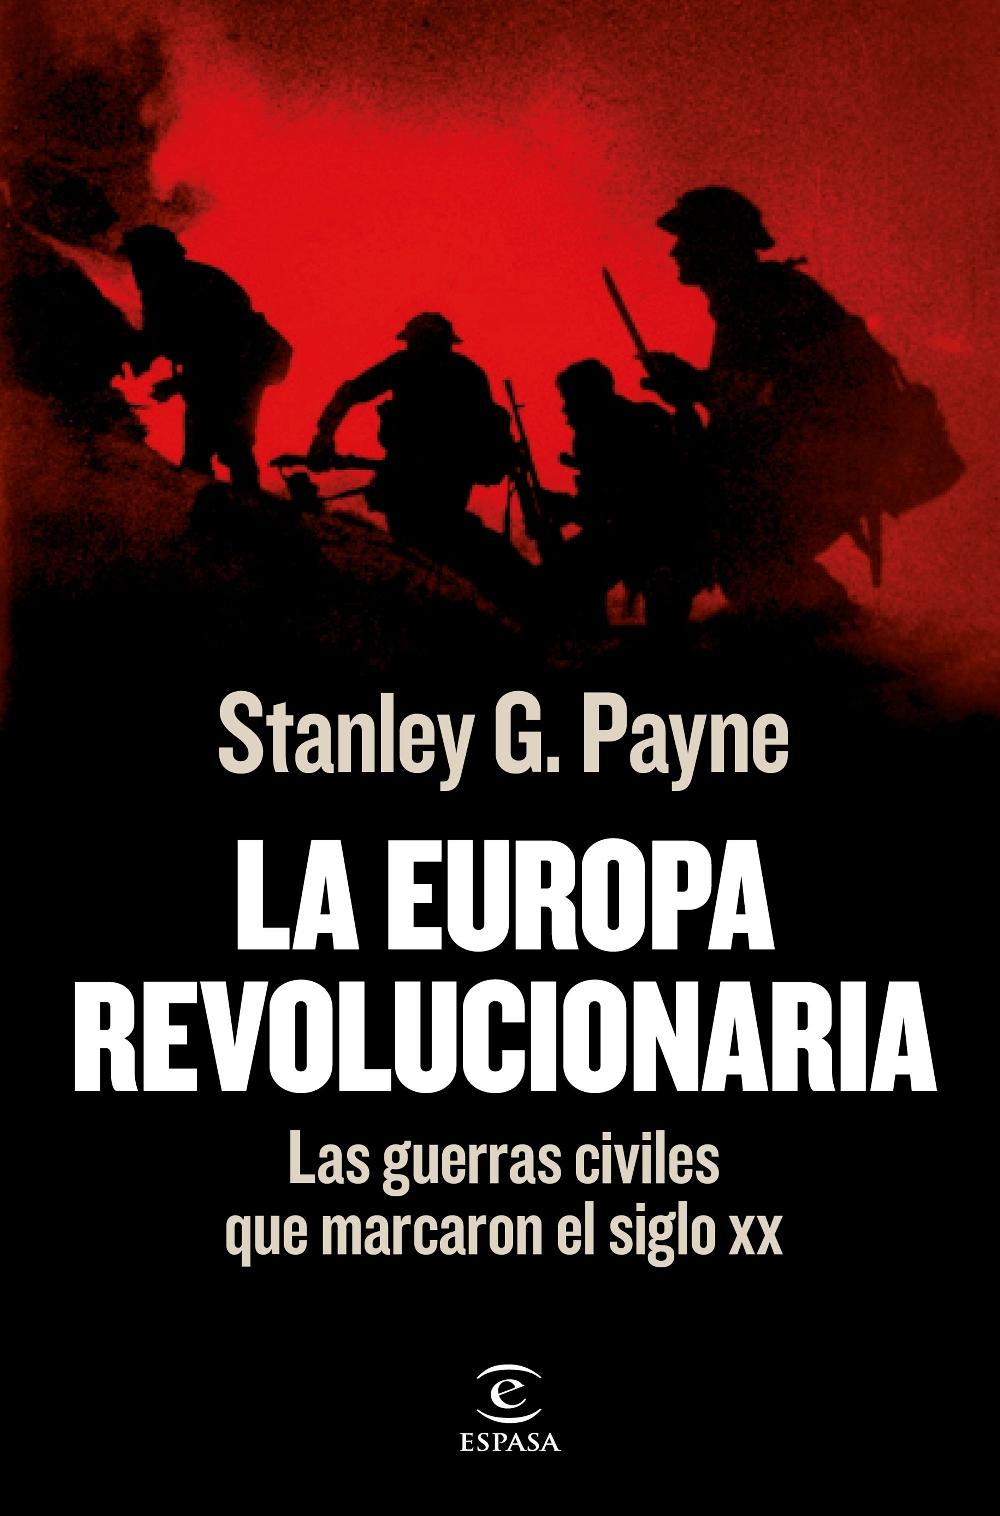 La Europa revolucionaria "Las guerras civiles que marcaron el siglo XX"